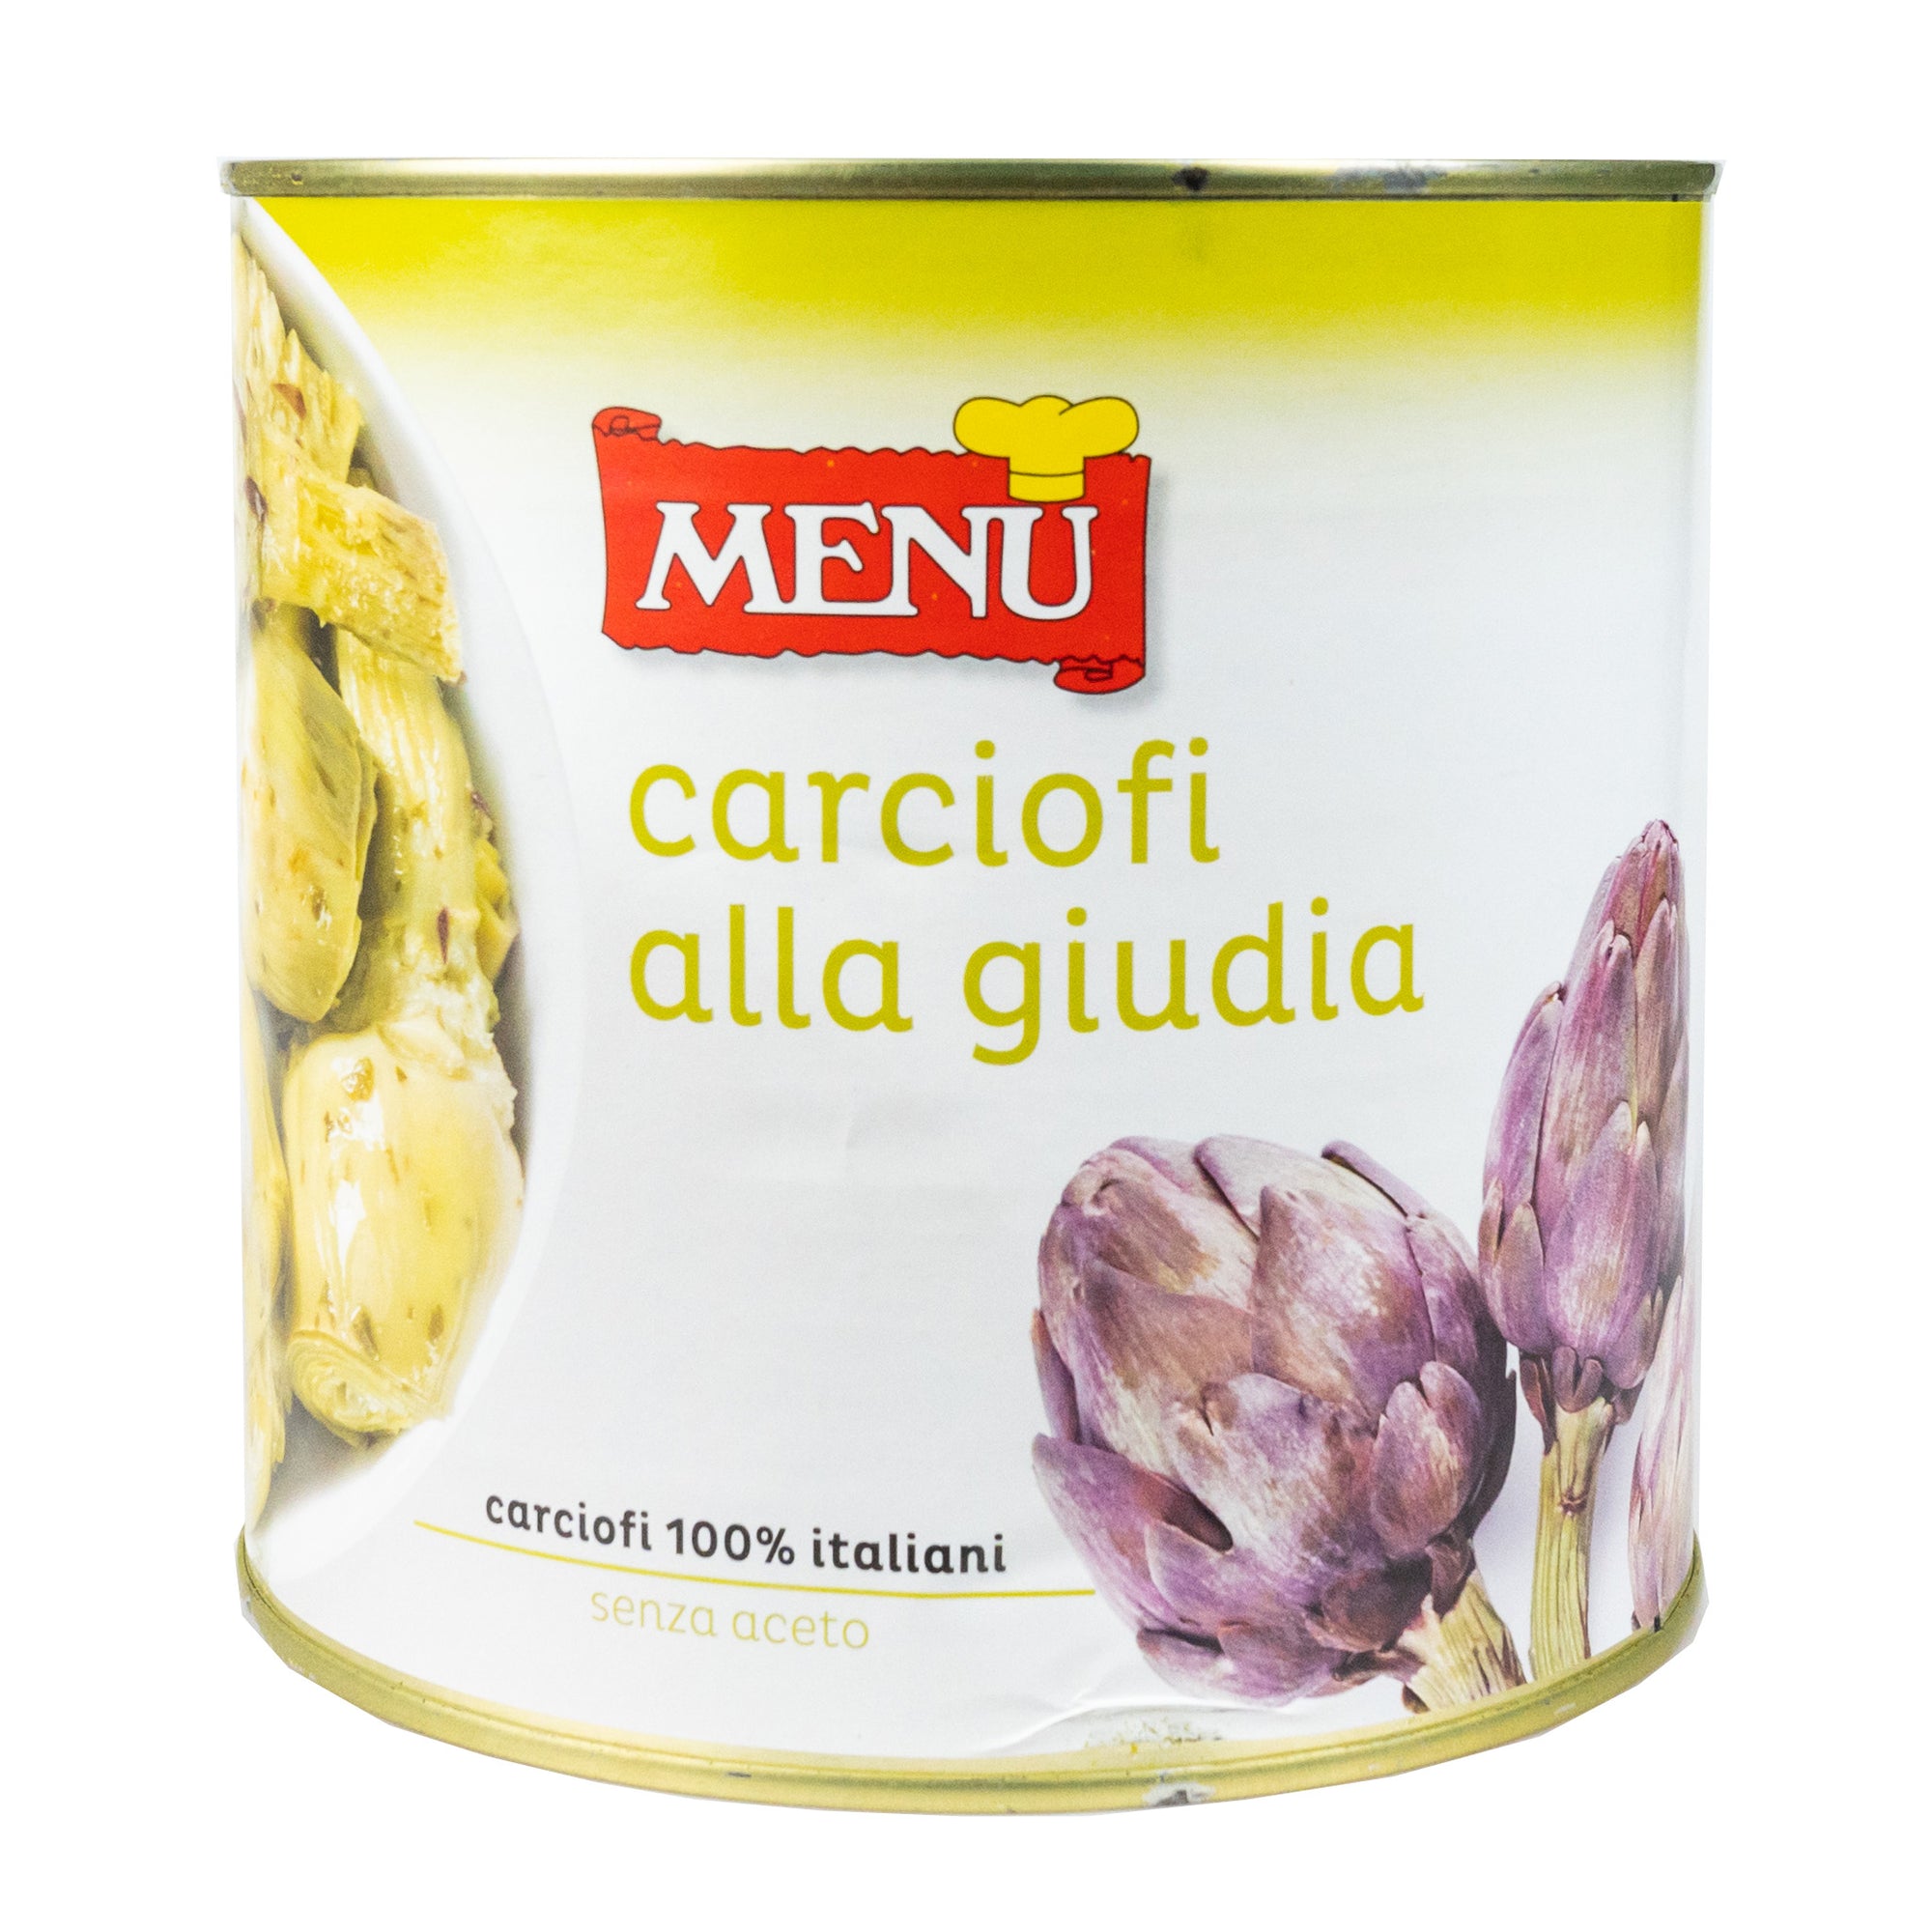 CARCIOFI ALLA GIUDIA - ARTICHOKES - 2550g - Jet Italian Deli - JID-DR-LO - EWTH - Italian food - Italian grocery - Food delivery - Thailand - Wine - Truffle - Pasta - Cheese